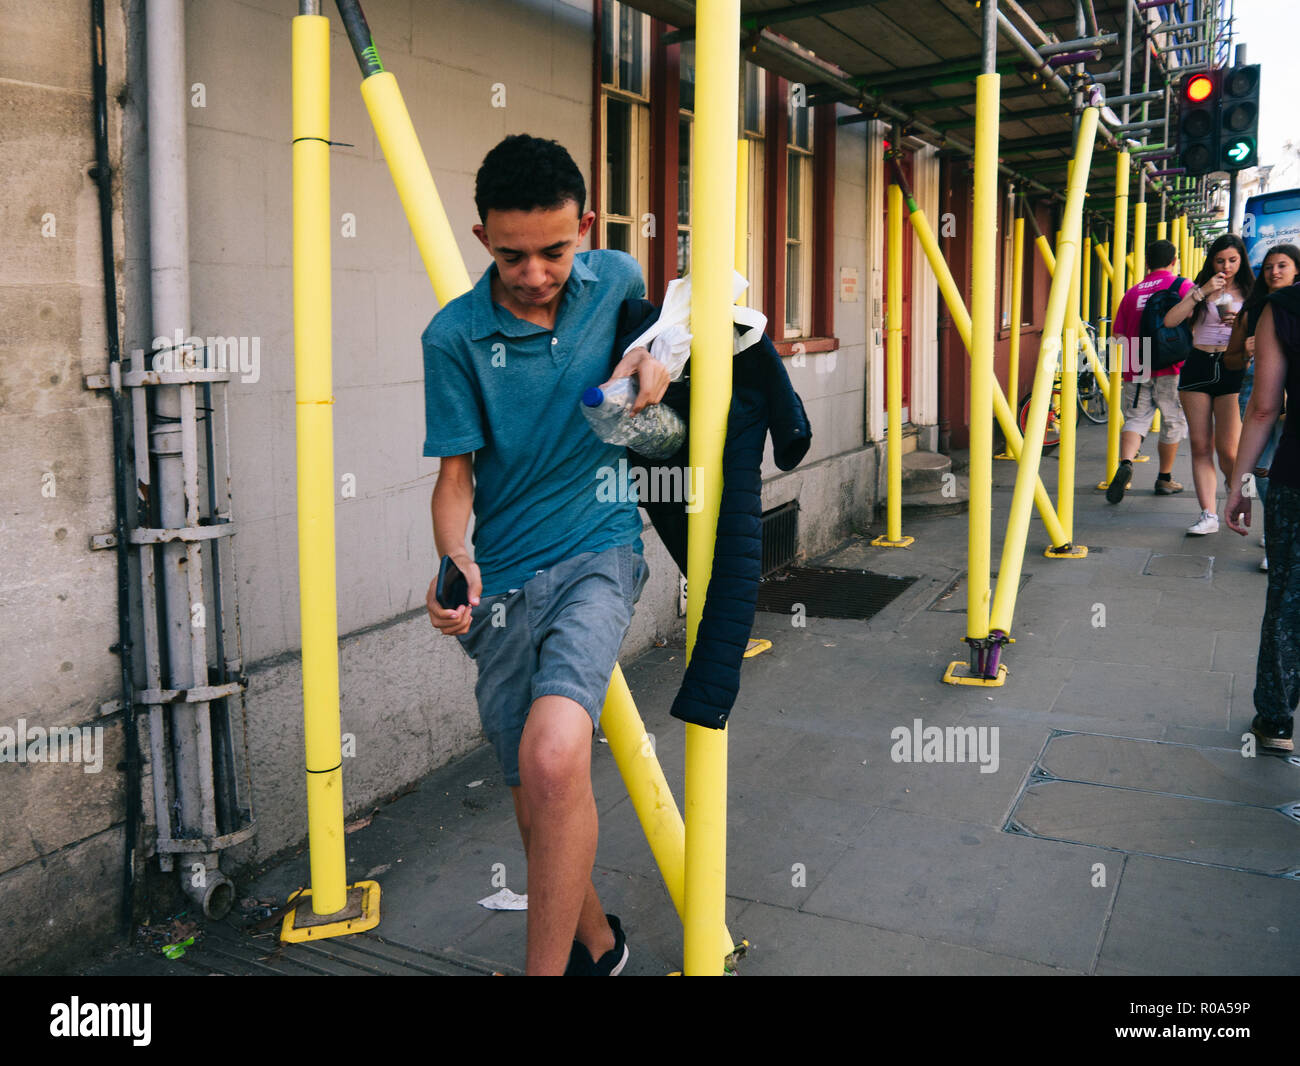 Iranian boy jumping through yellow scaffoldings in Oxford, having fun Stock Photo